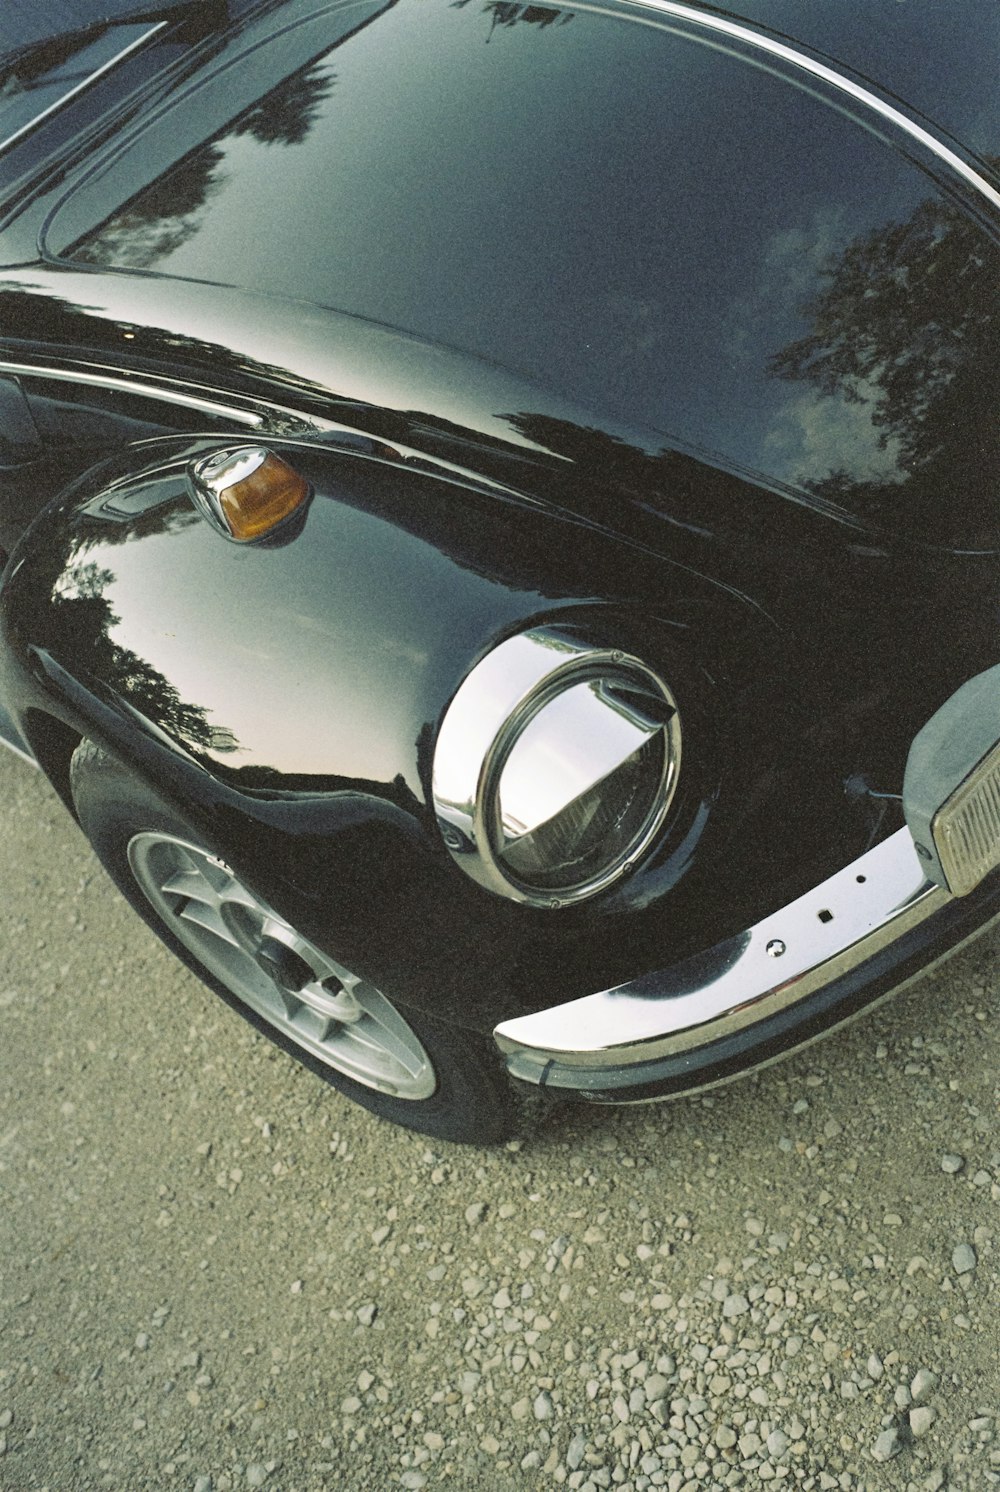 um close up da extremidade dianteira de um carro preto